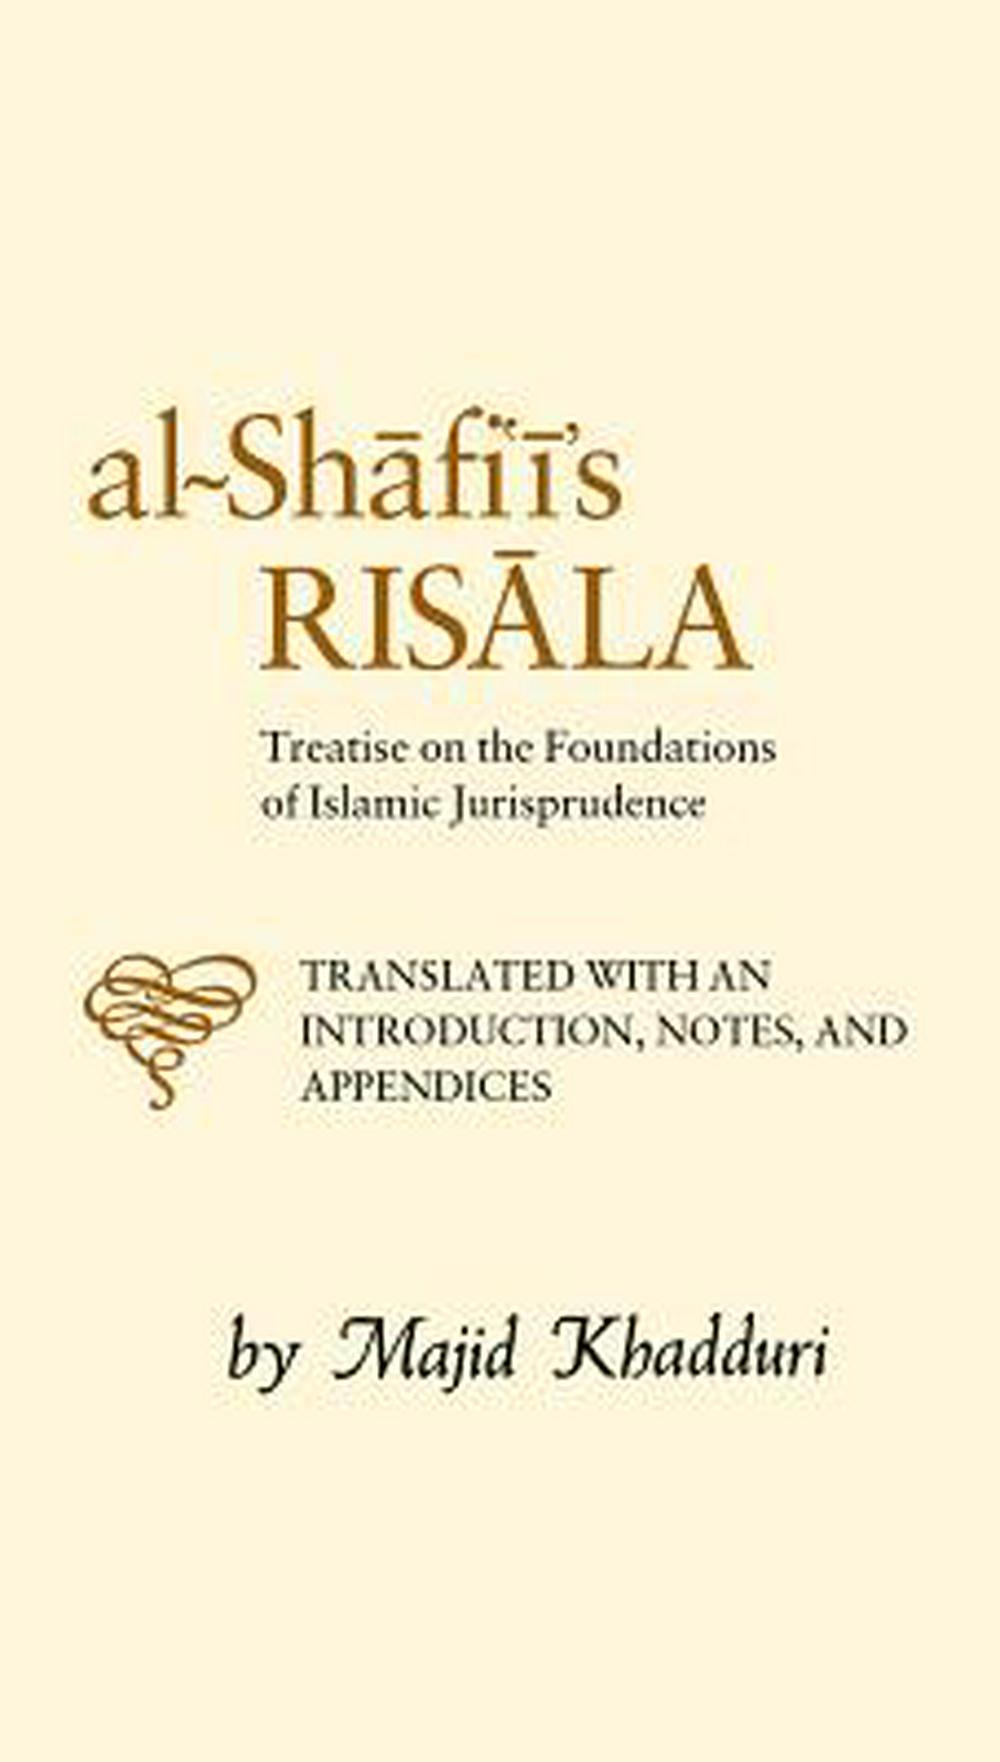 Al-Shafiis Risala: Treatise On The Foundations of Islamic Jurisprudence